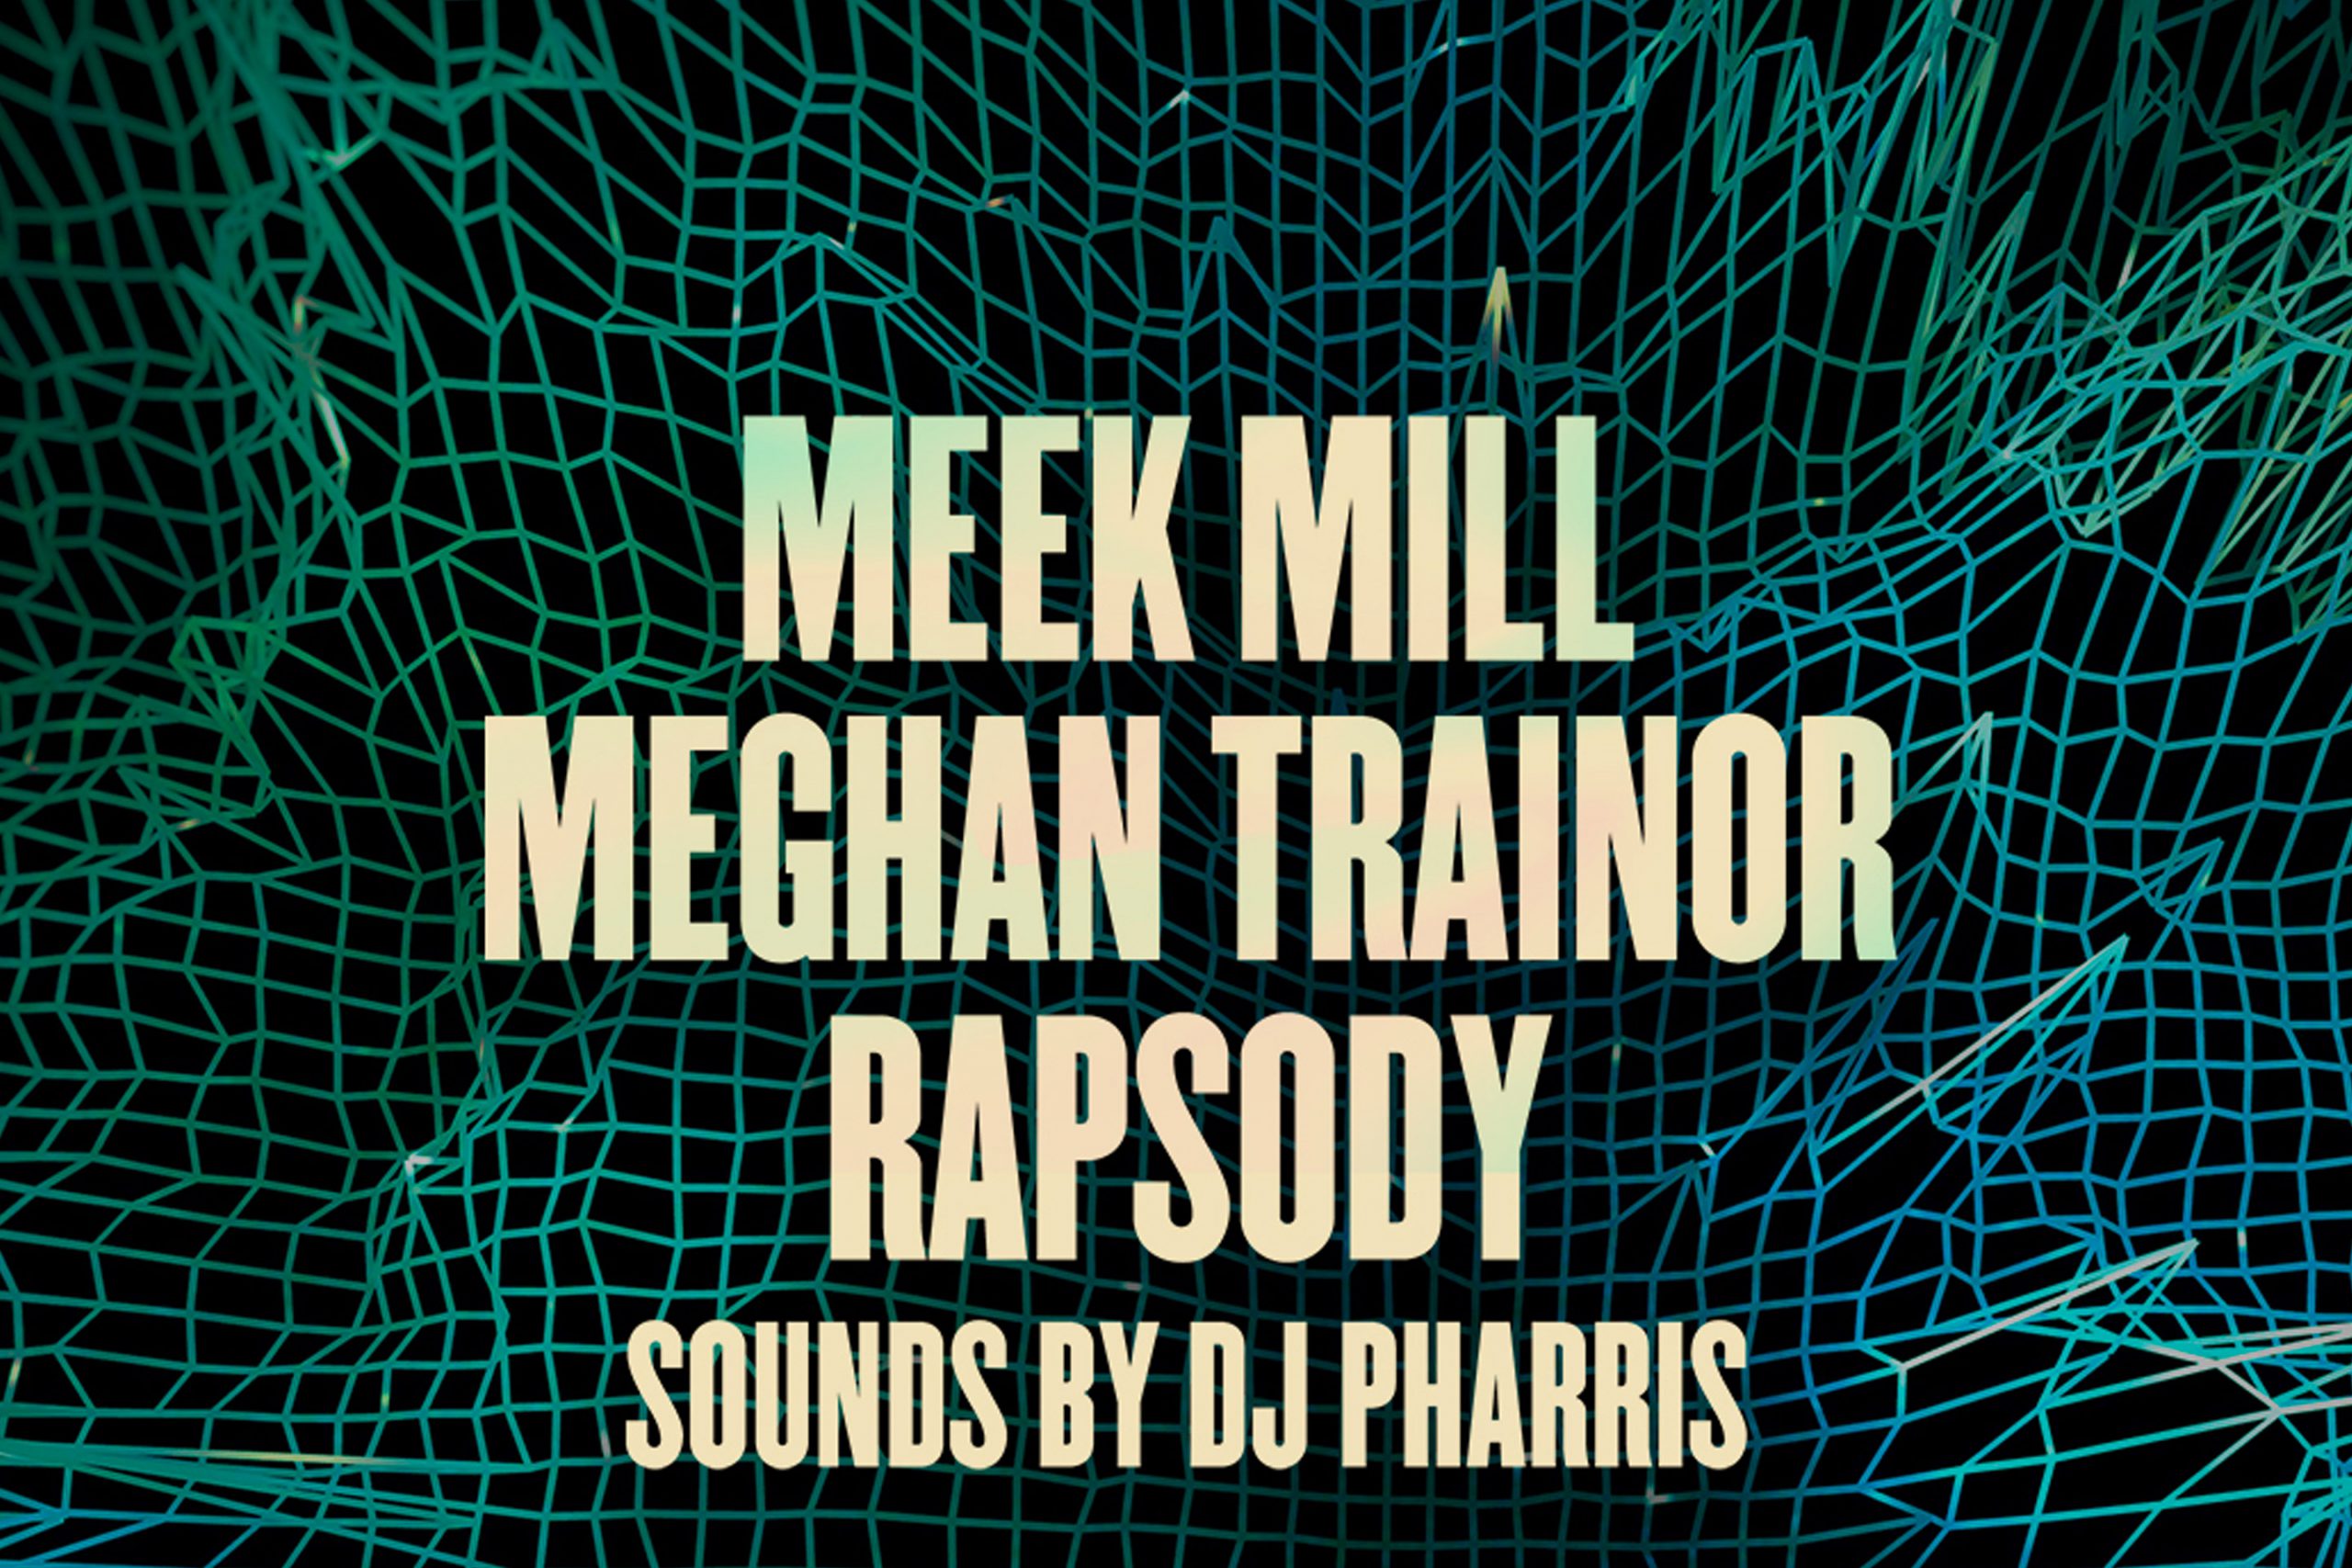 Written on Meek Mill, Meghan Trainor and Rapsody sounds by DJ Pharris